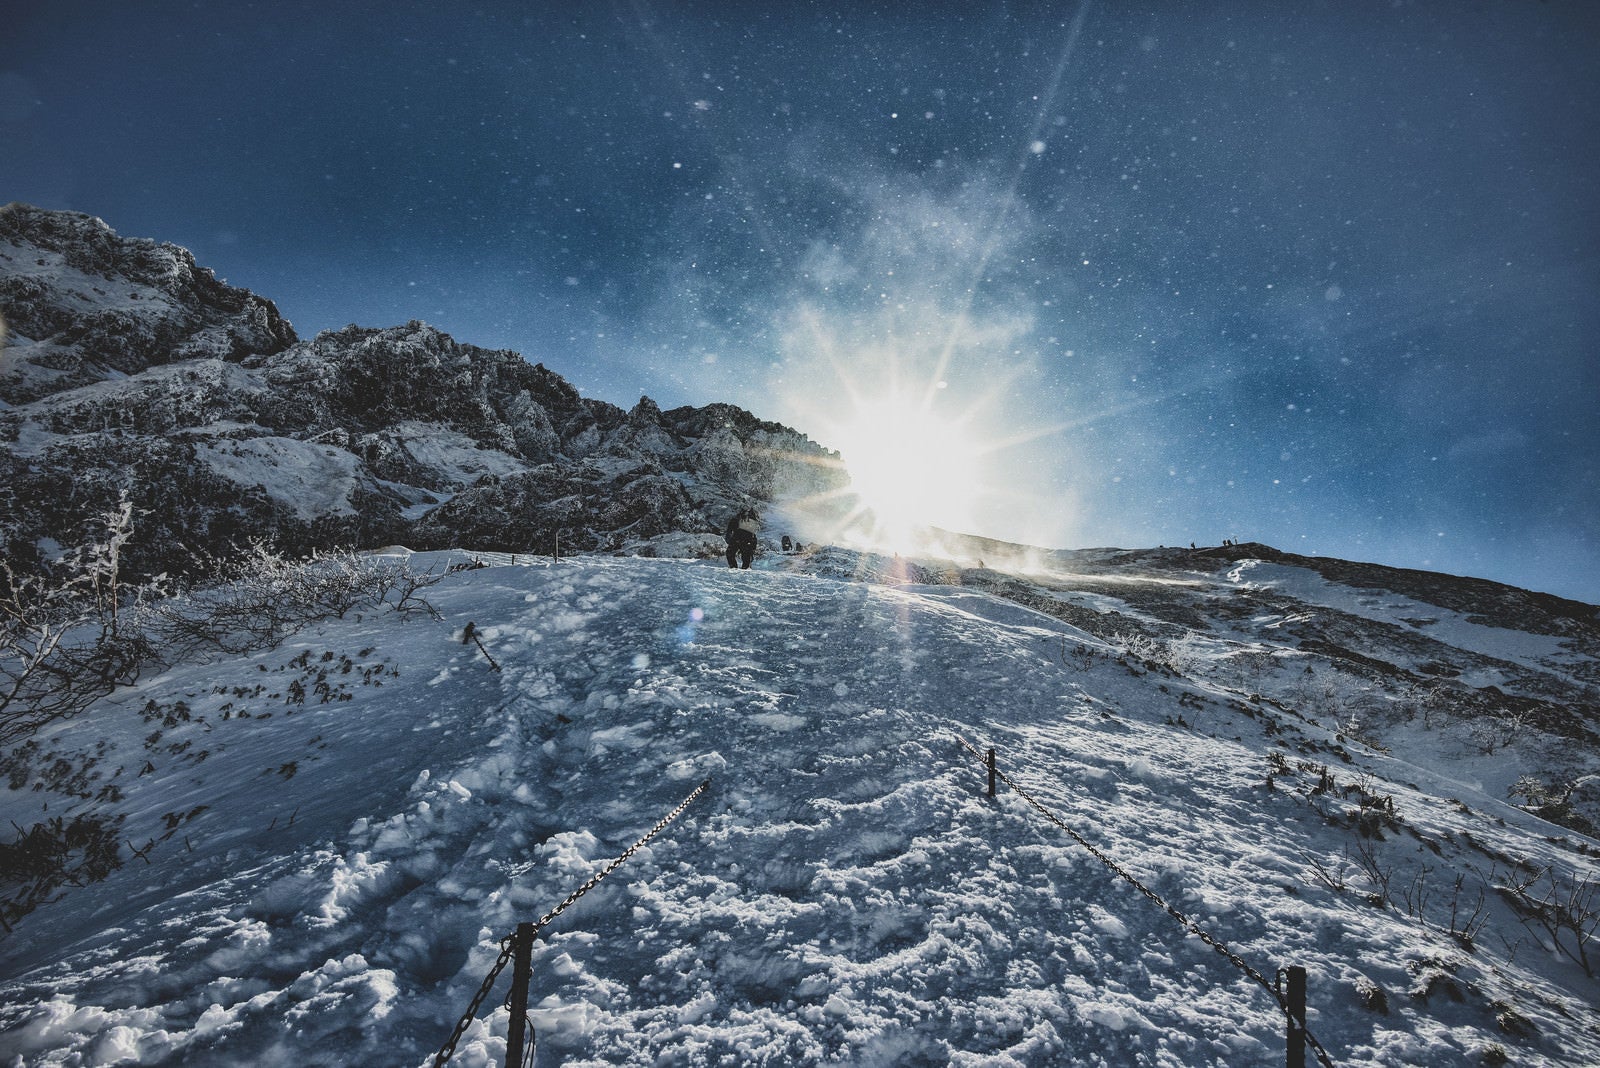 「雪煙舞う稜線と登山者」の写真